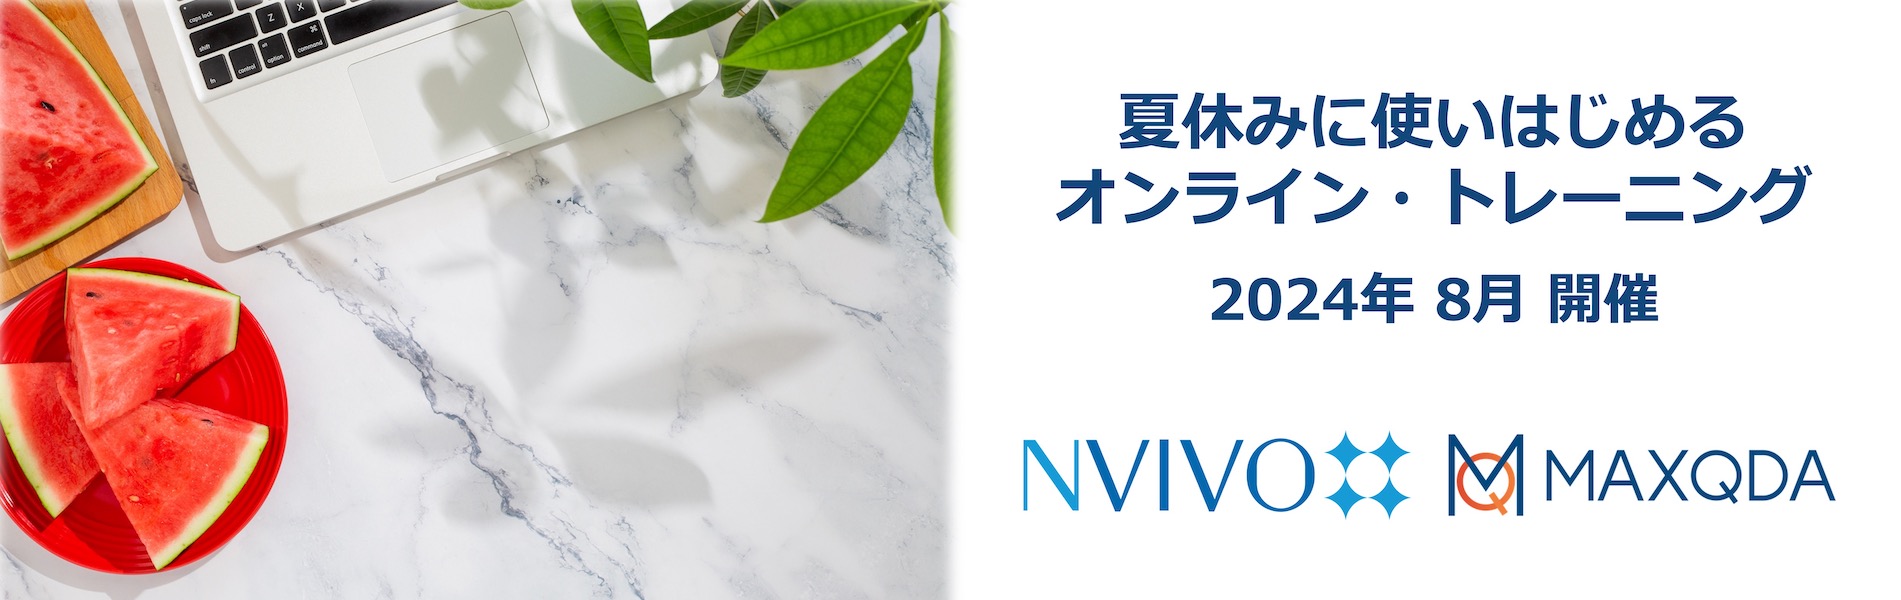 NVivo / MAXQDA online trainings Aug24